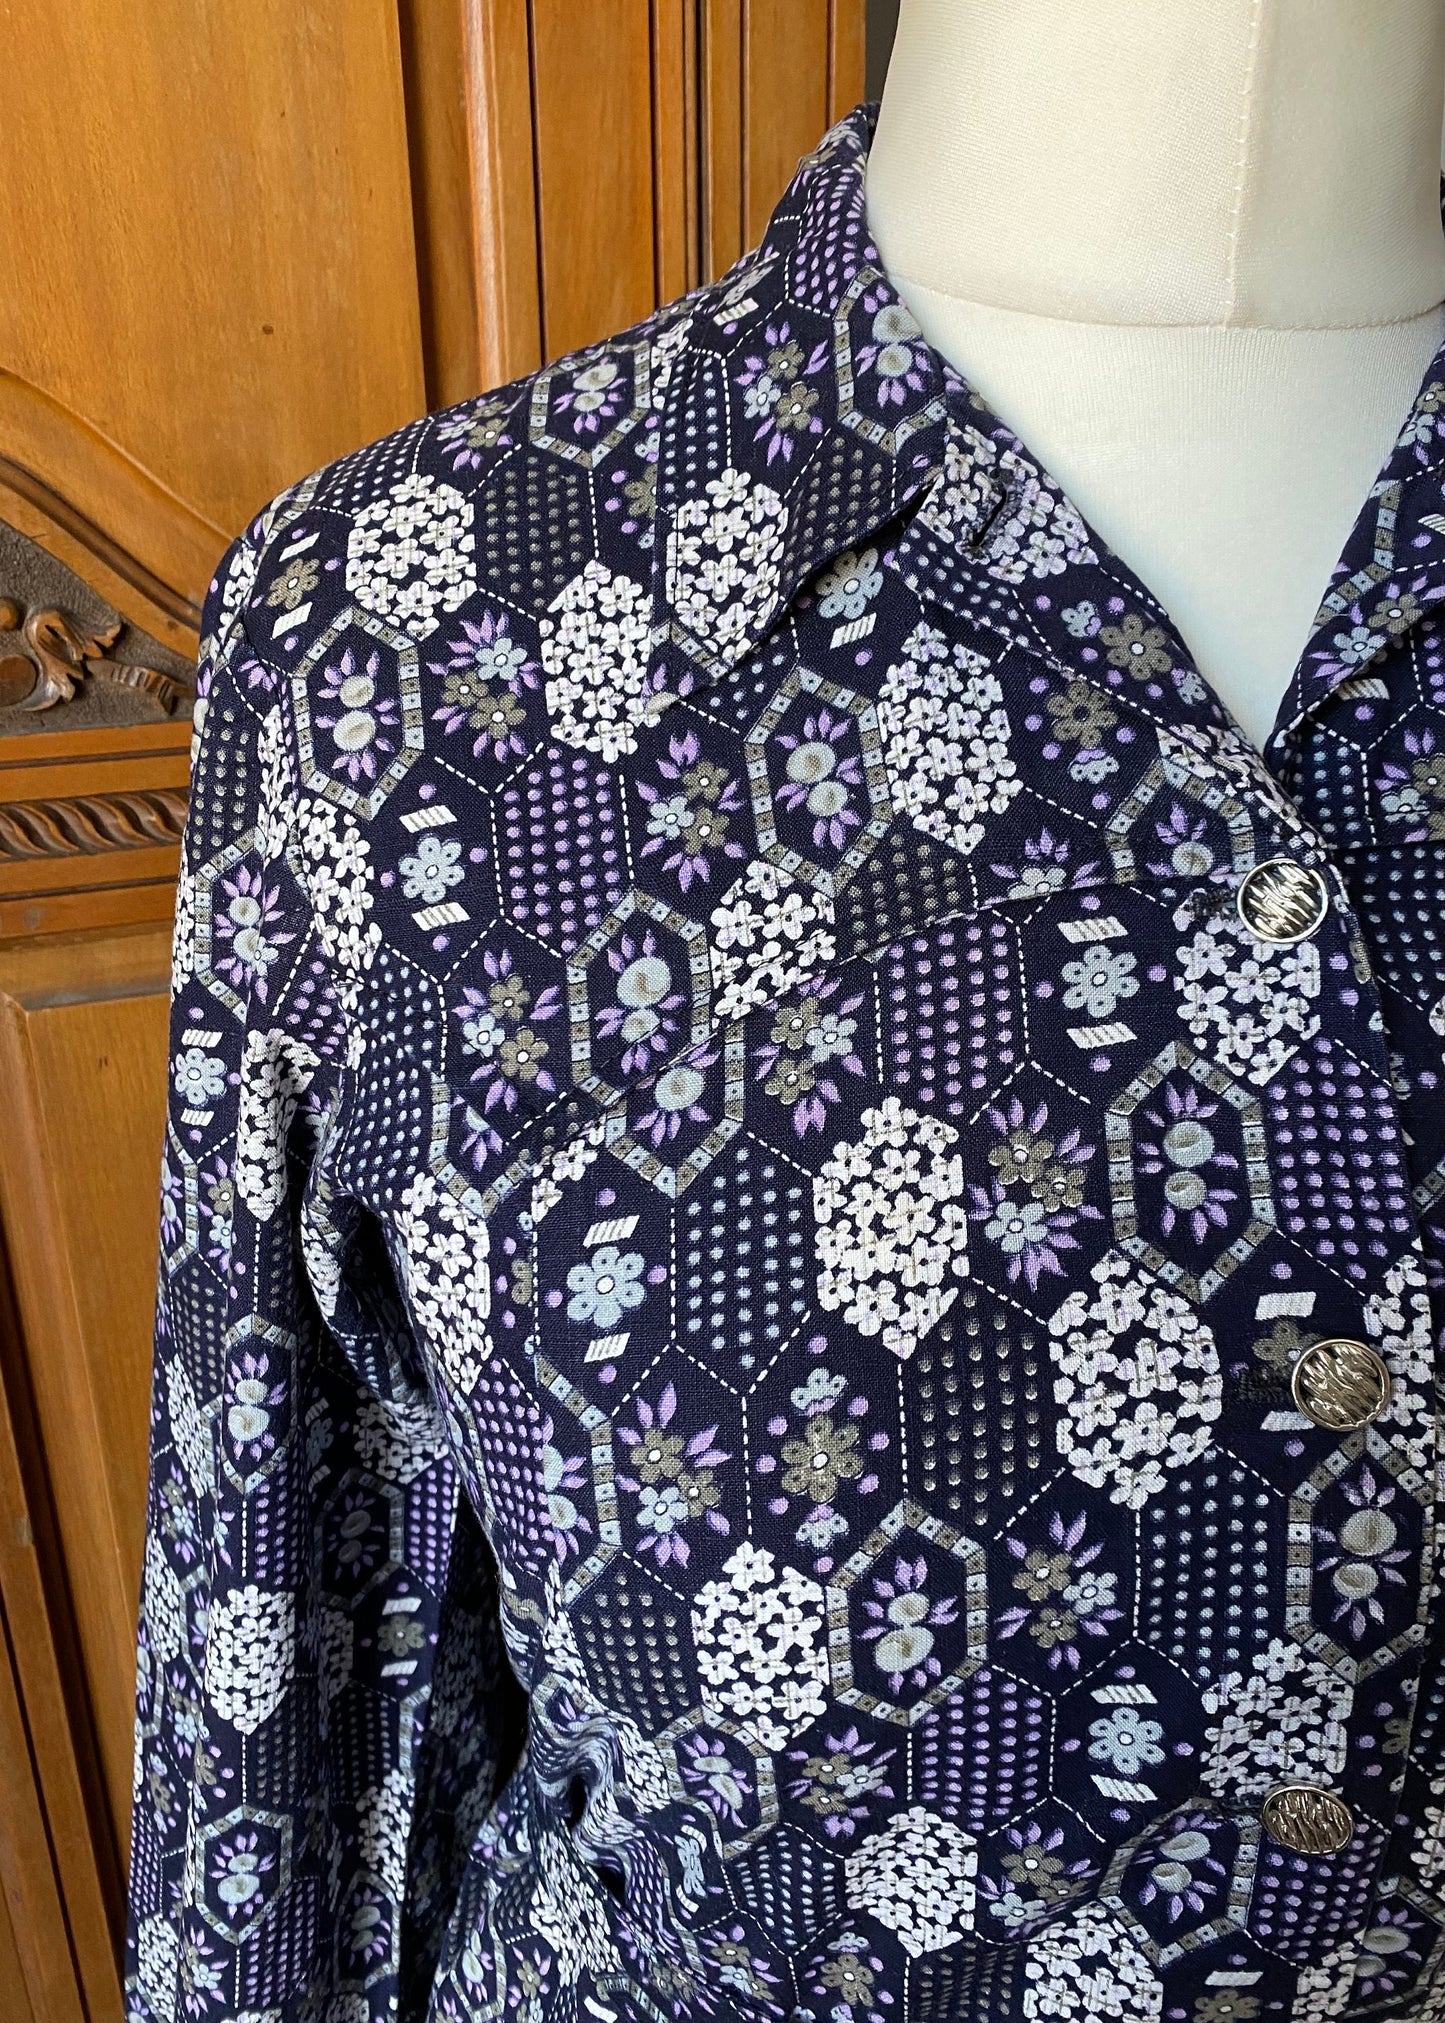 70s purple and white geometric print shirt dress with matching belt. Approx  U.K size 12-14